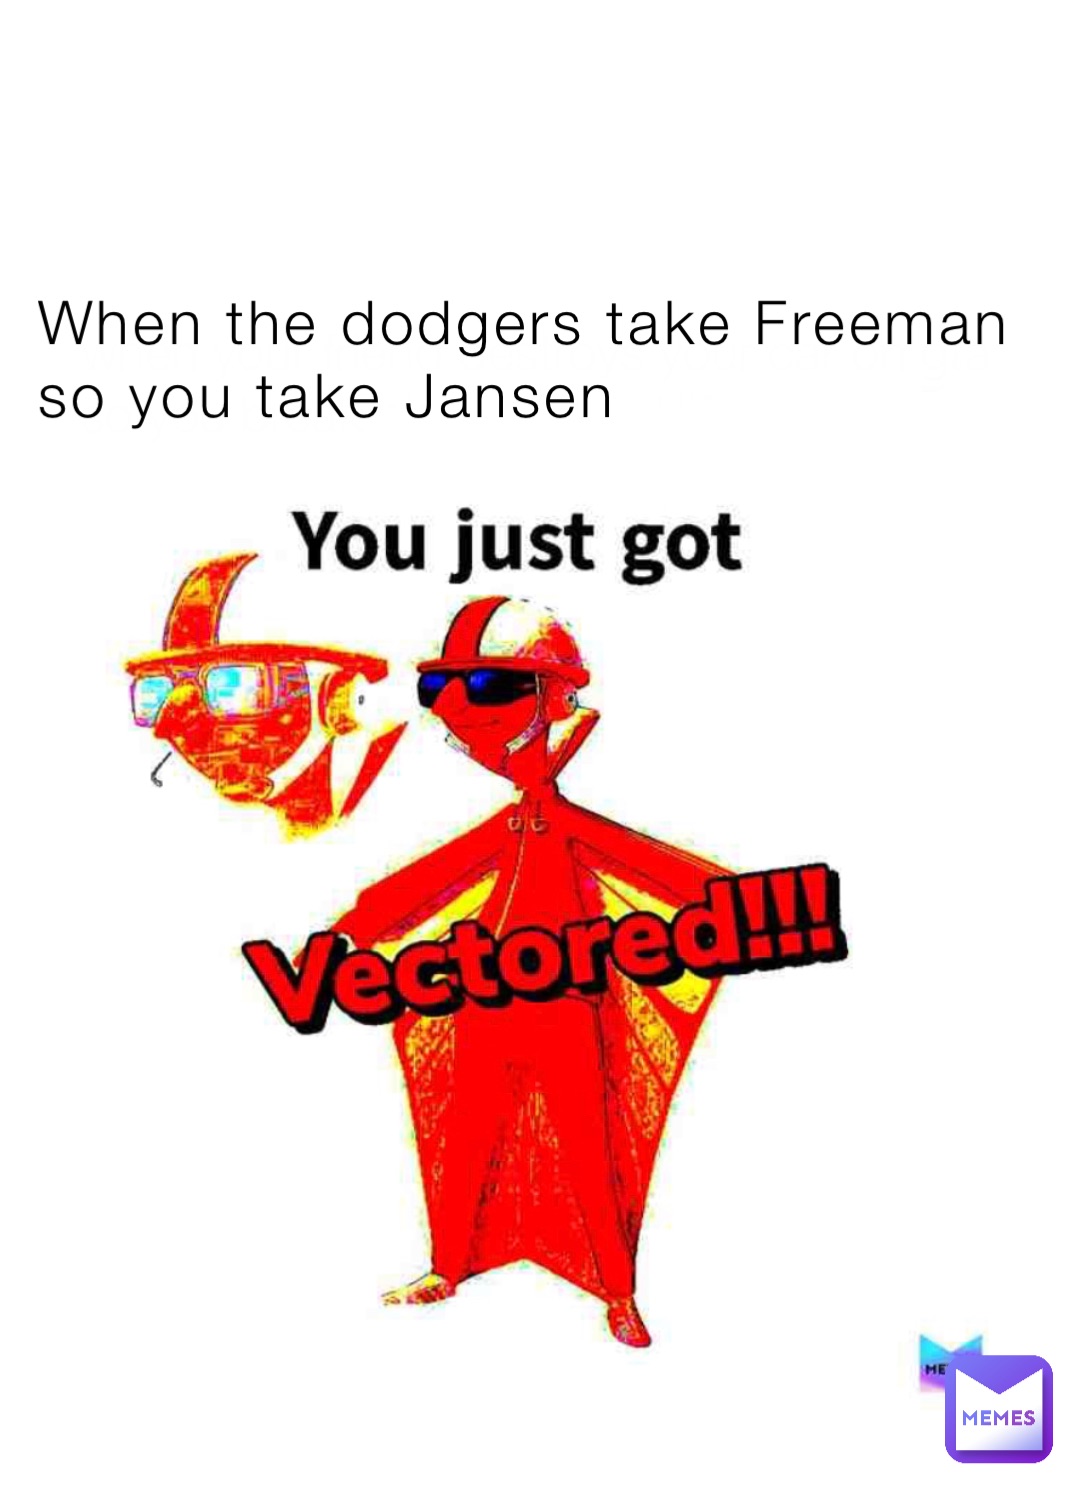 When the dodgers take Freeman so you take Jansen